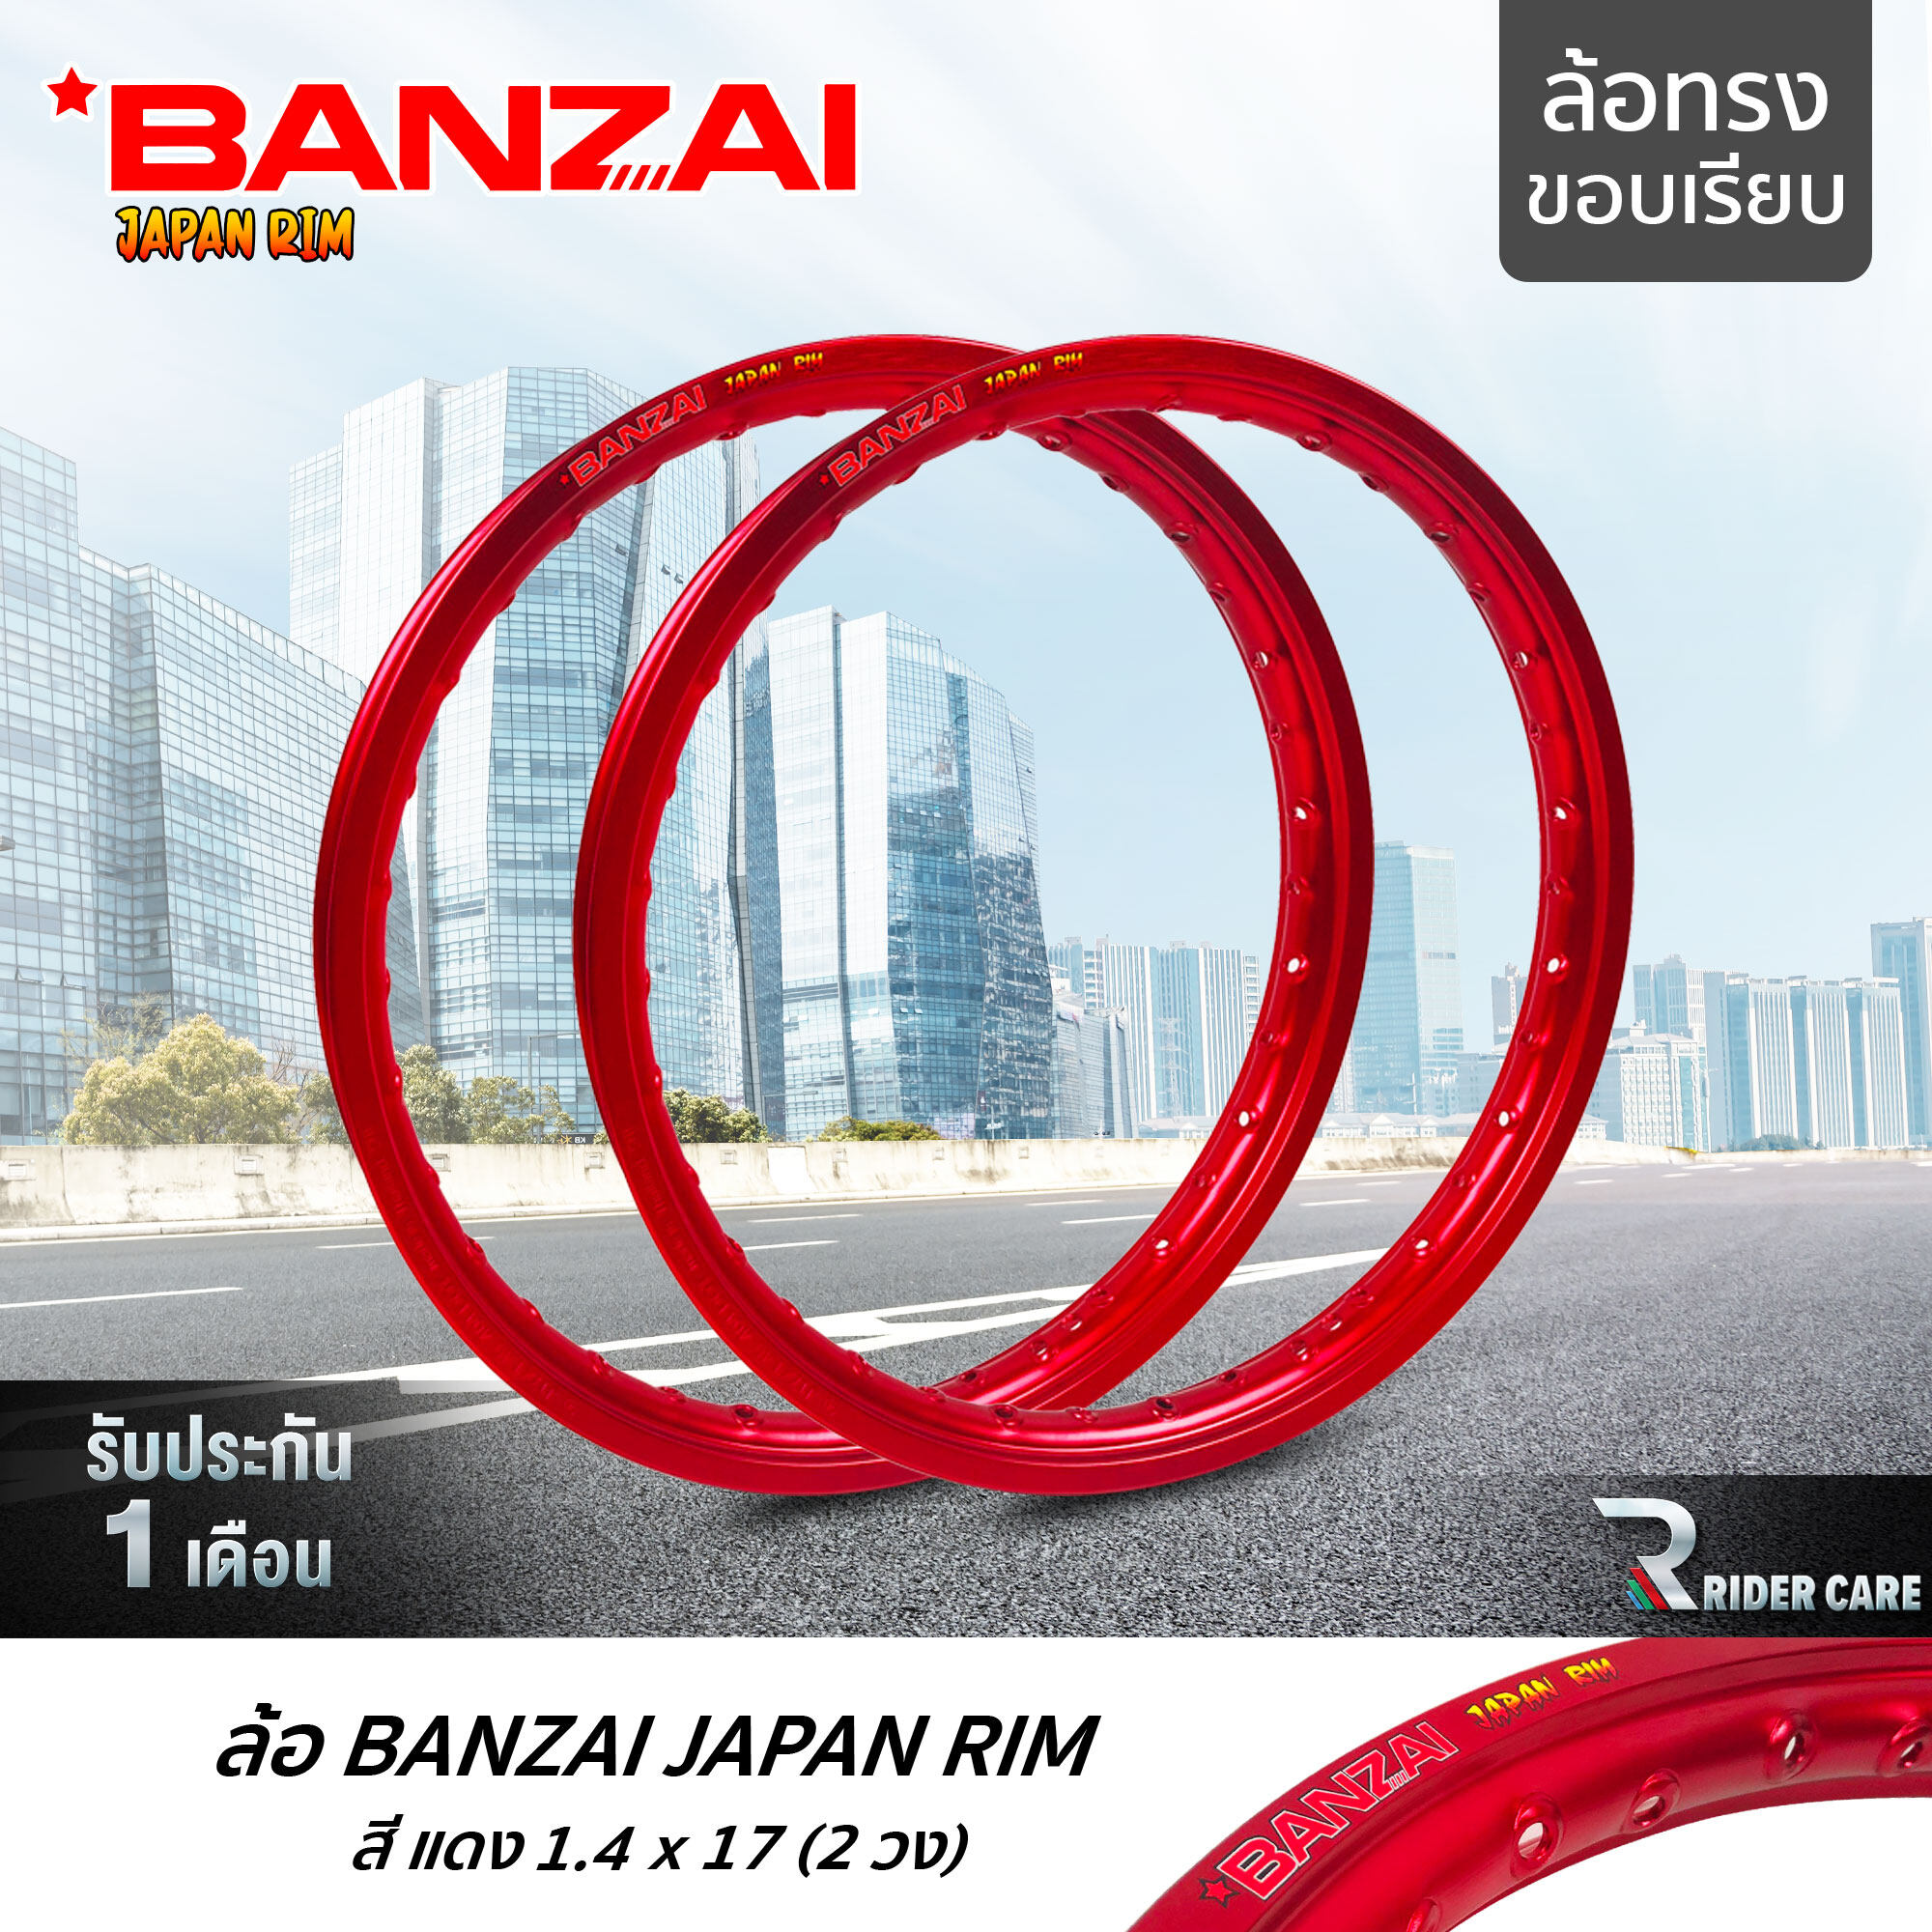 BANZAI ล้อขอบ 17 บันไซ รุ่น JAPAN RIM 1.4 ขอบ17 นิ้ว ล้อทรงขอบเรียบ แพ็คคู่ 2 วง วัสดุอลูมิเนียม ของแท้ รถจักรยานยนต์ สี แดง